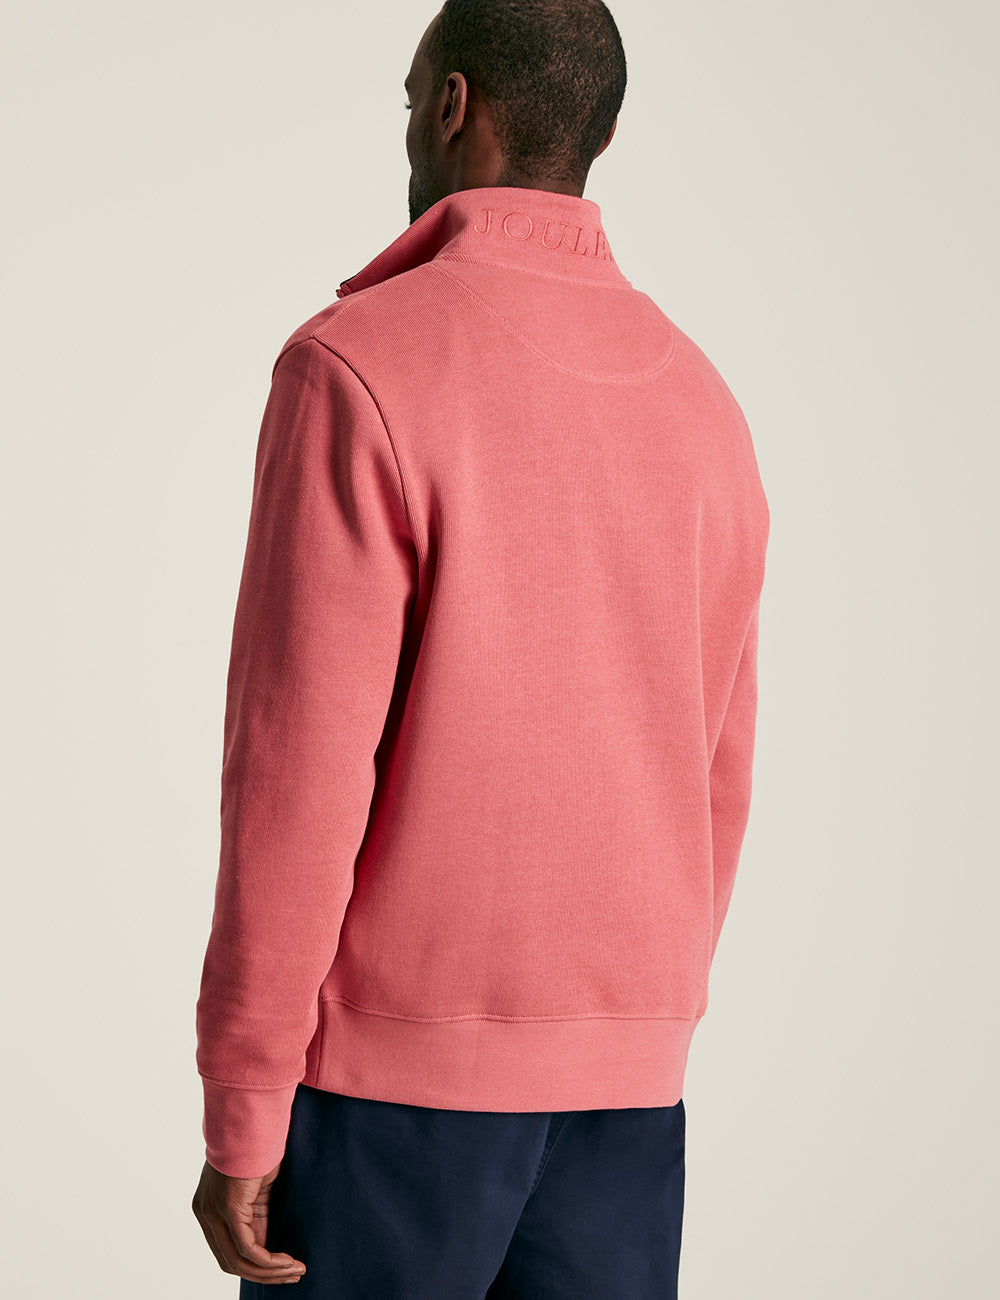 Joules Alistair 1/4 Zip Sweatshirt - Rose